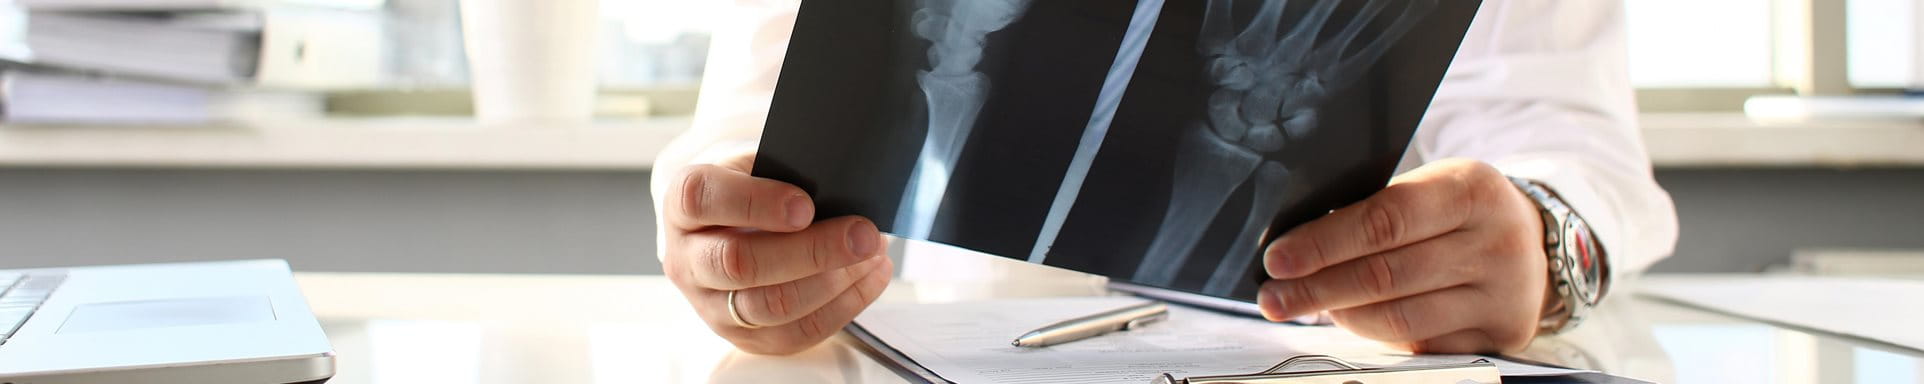 Un médecin s'assied à la table et regarde une image radiographique.